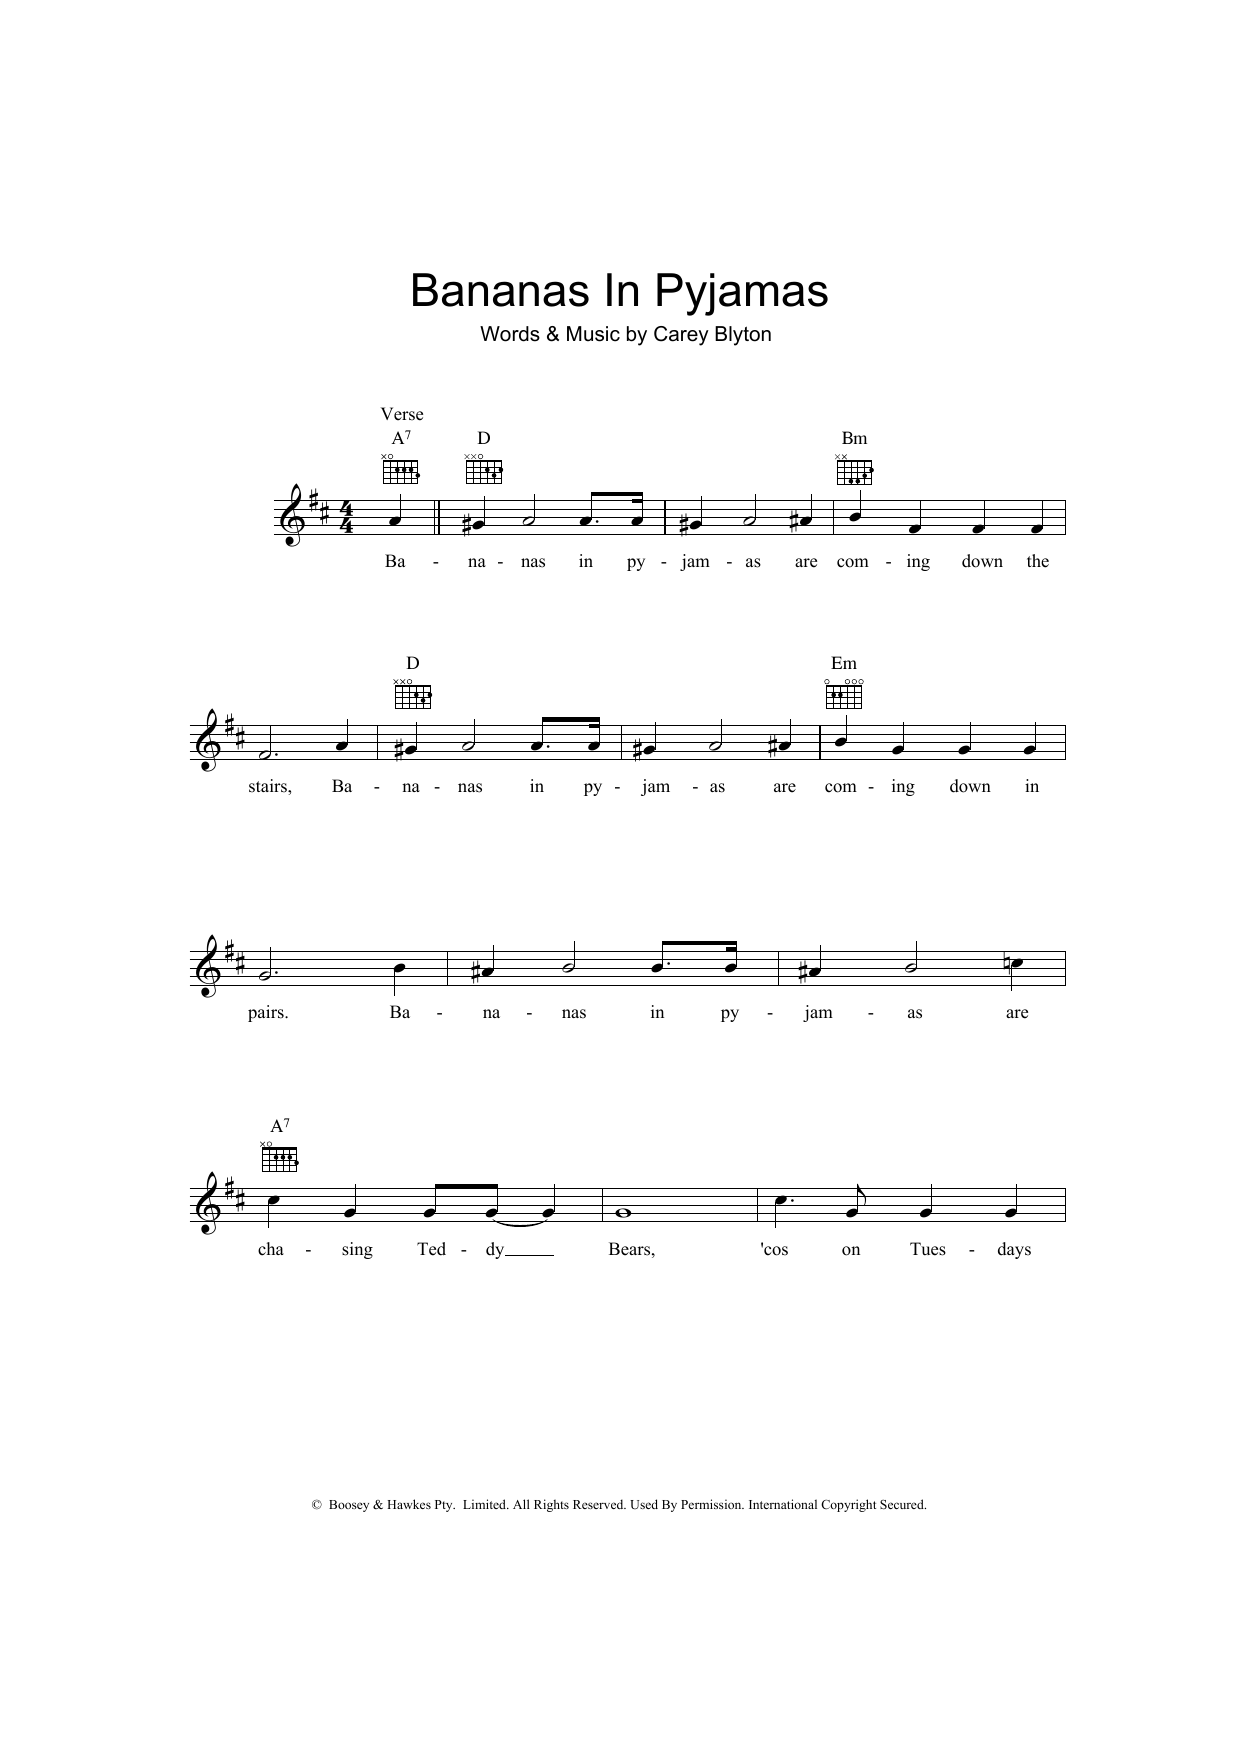 Carey Blyton Bananas In Pyjamas Sheet Music Notes & Chords for Ukulele - Download or Print PDF